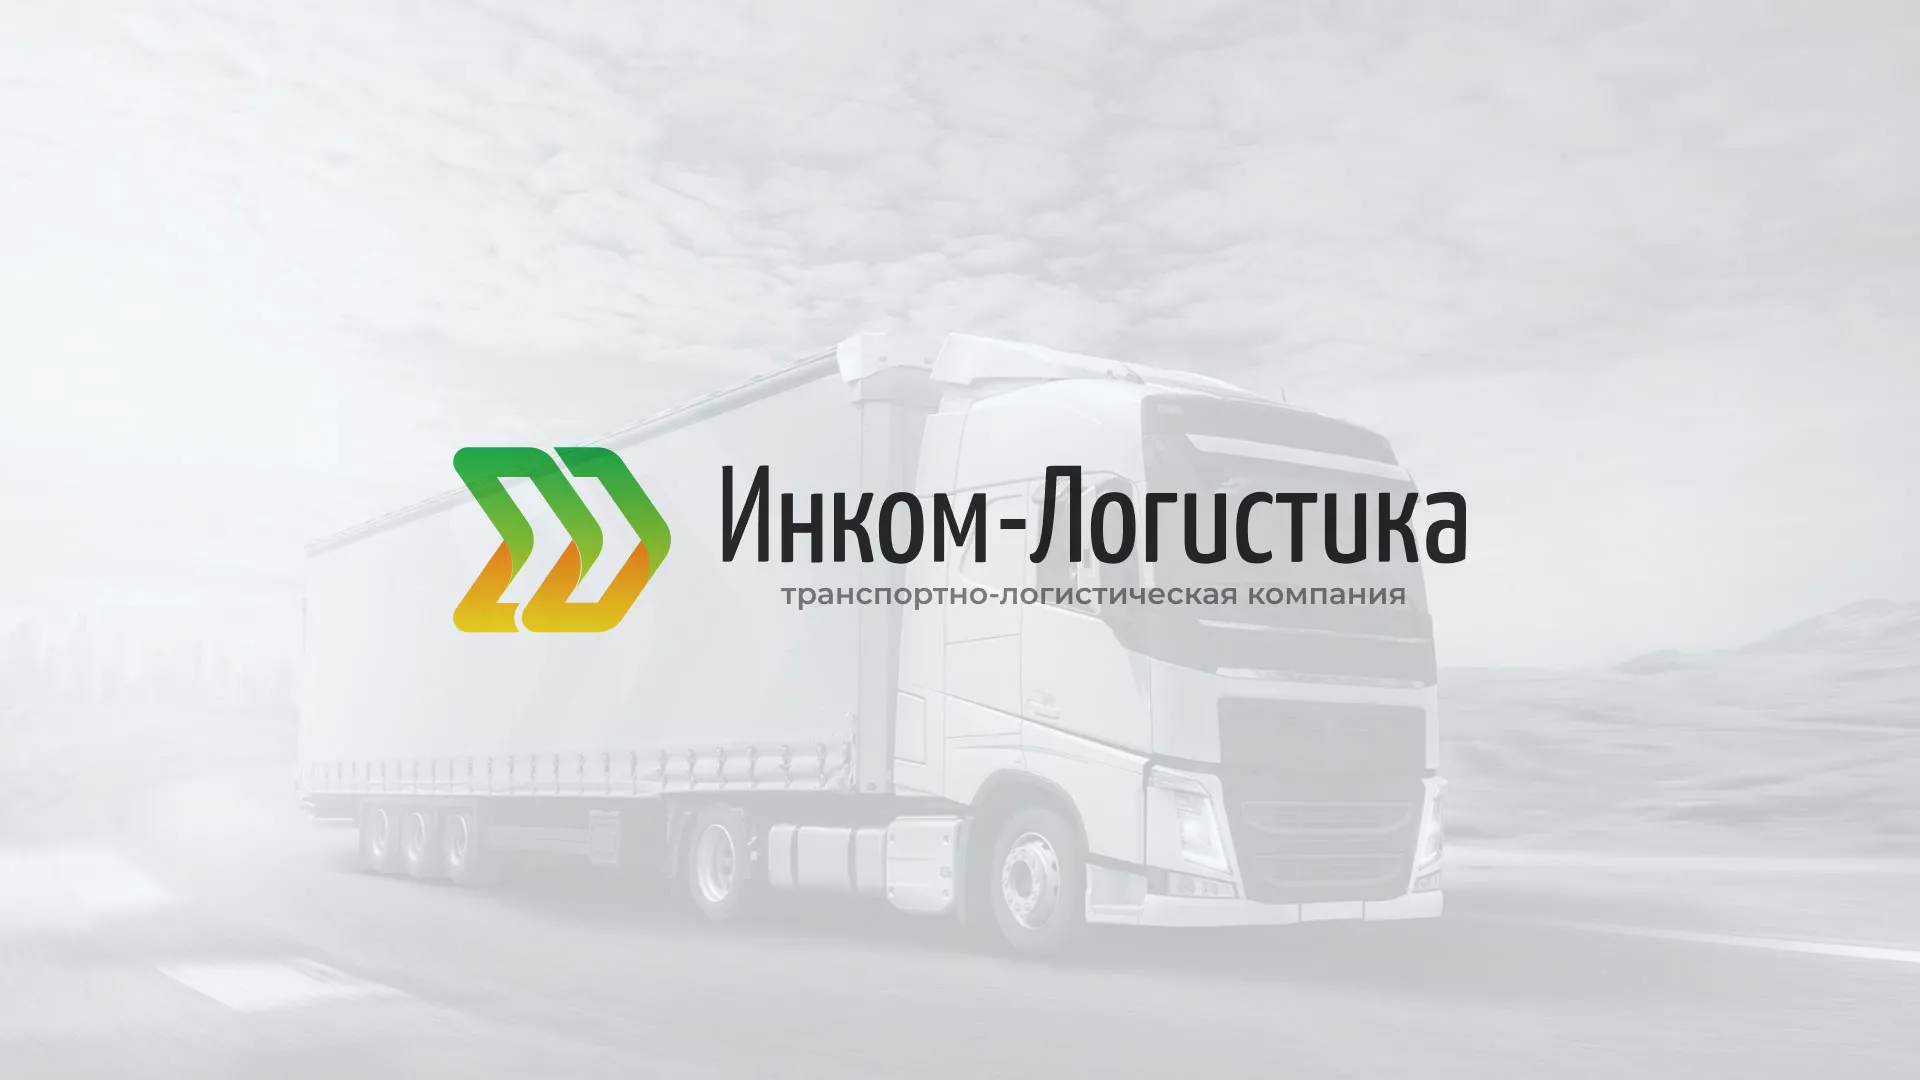 Разработка логотипа и сайта компании «Инком-Логистика» в Алексеевке